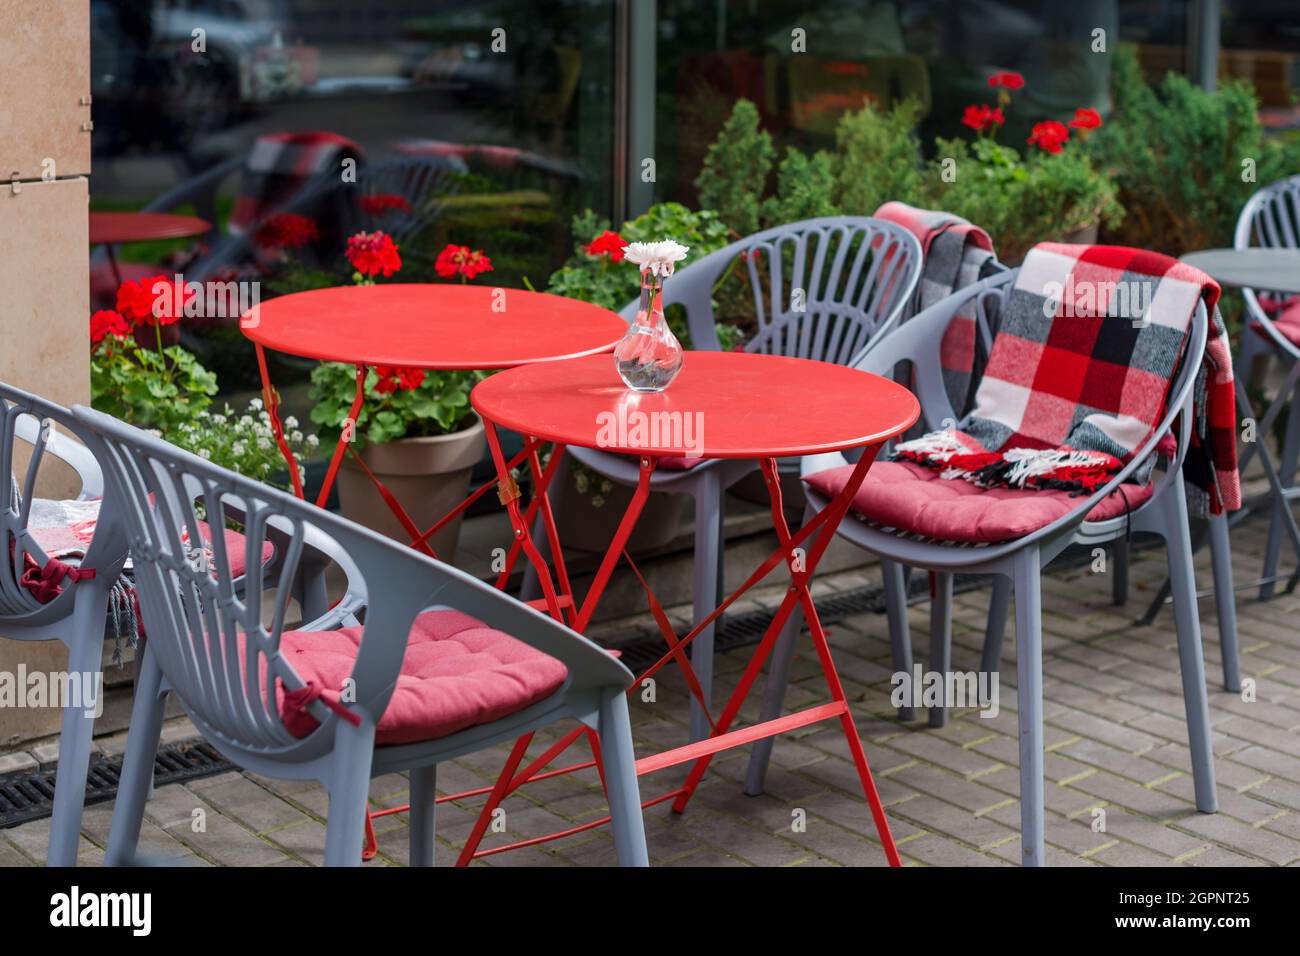 Leere Stühle im Café oder Restaurant im Freien. Tische und Stühle aus rotem  und grauem Metall im Straßencafé. Herbst in der Stadt, Plaids auf Stühlen  und Tischen von A Stockfotografie - Alamy